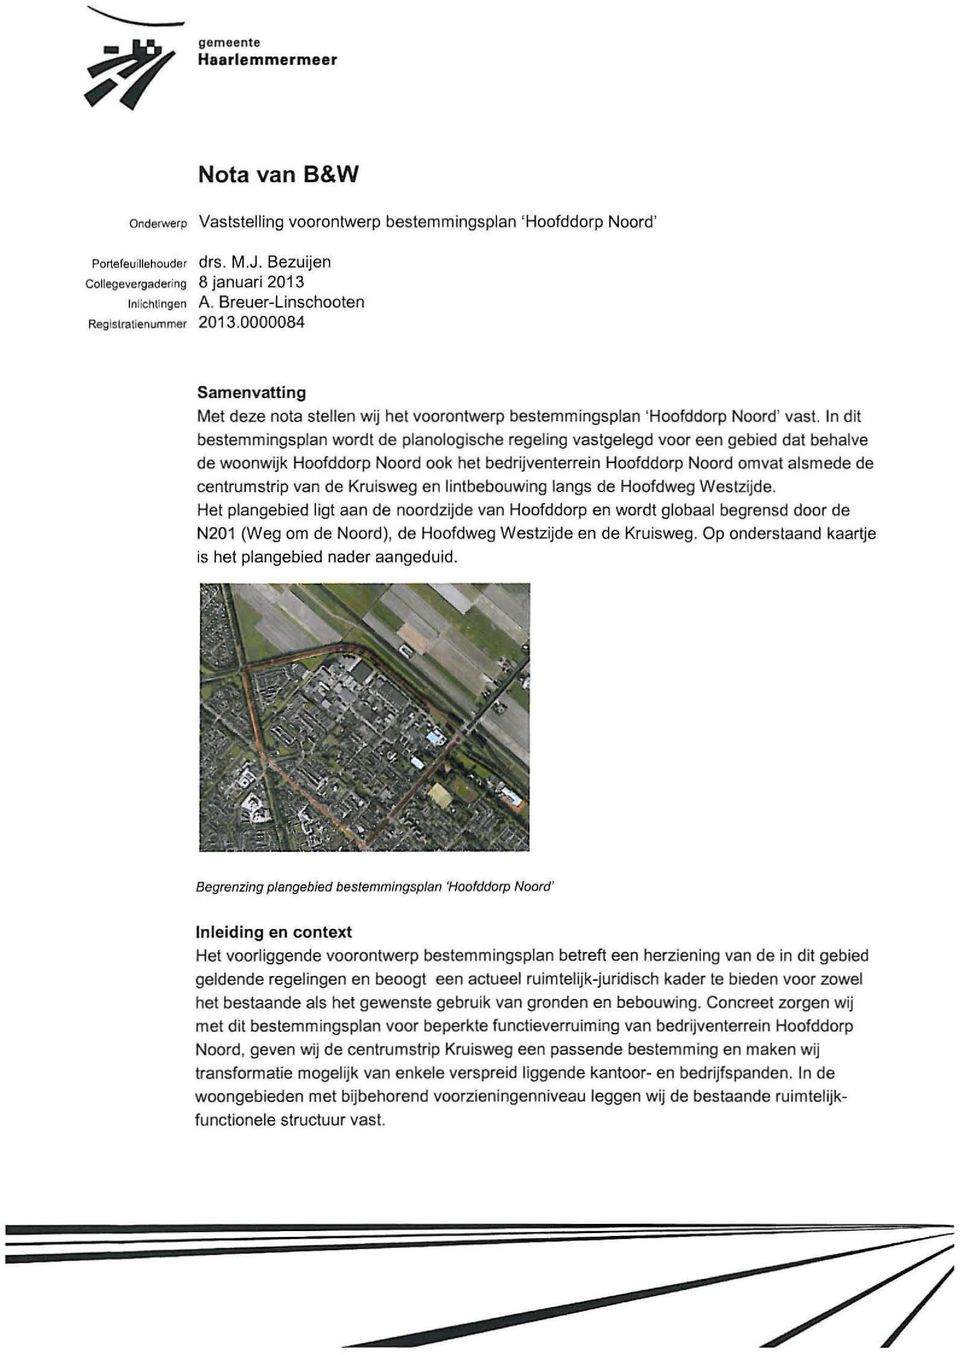 In dit betemmingplan wordt de planologiche regeling vatgelegd voor een gebied dat behalve de woonwijk Hoofddorp Noord ook het bedrijventerrein Hoofddorp Noord omvat almede de centrumtrip van de